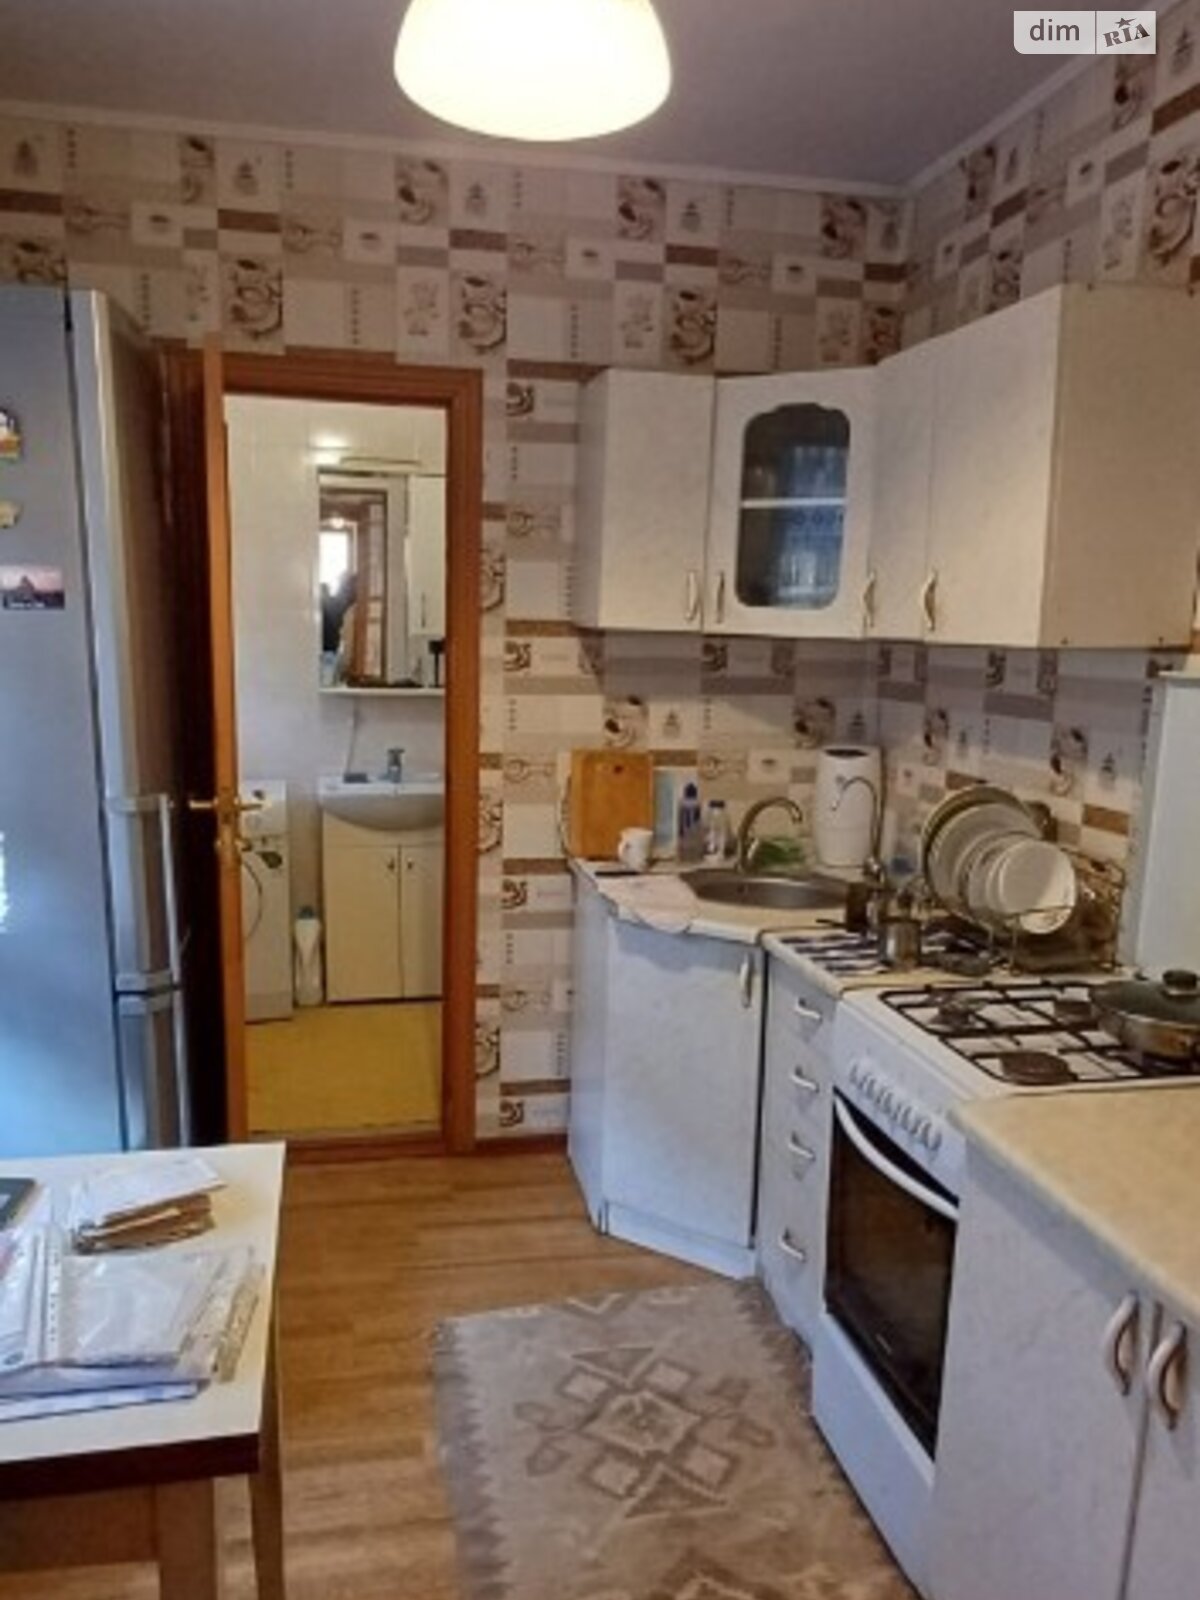 Продажа части дома в Одессе, улица Социальная, район Слободка, 2 комнаты фото 1